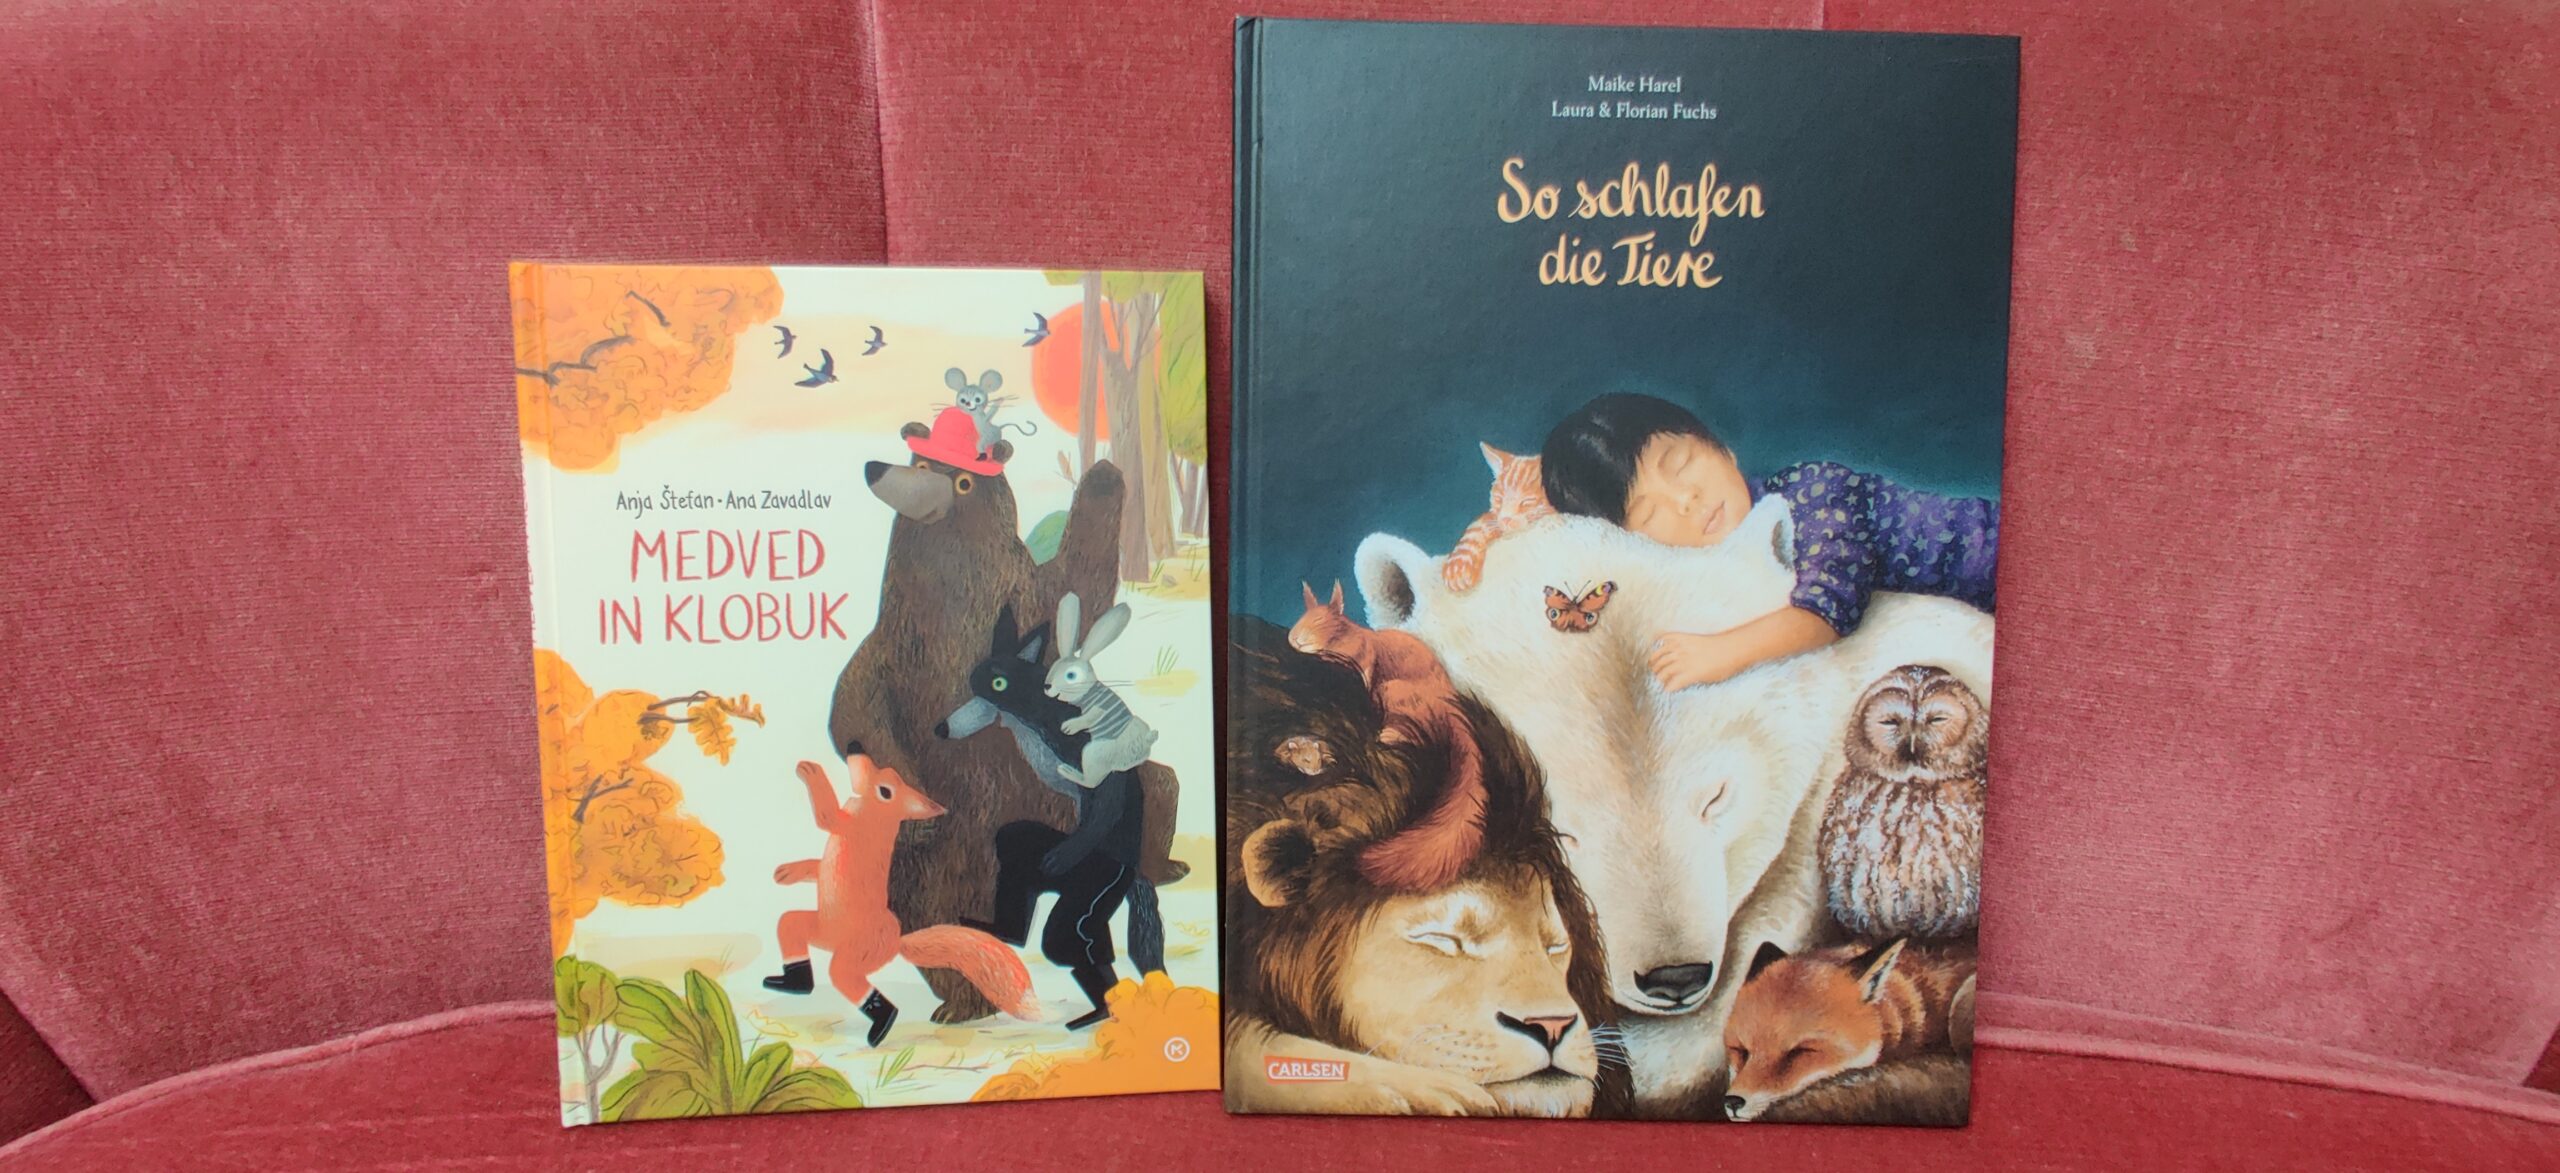 Nove knjige za naše otroke v knjigarni Haček! / Neue Kinderbücher in der Buchhandlung Haček!